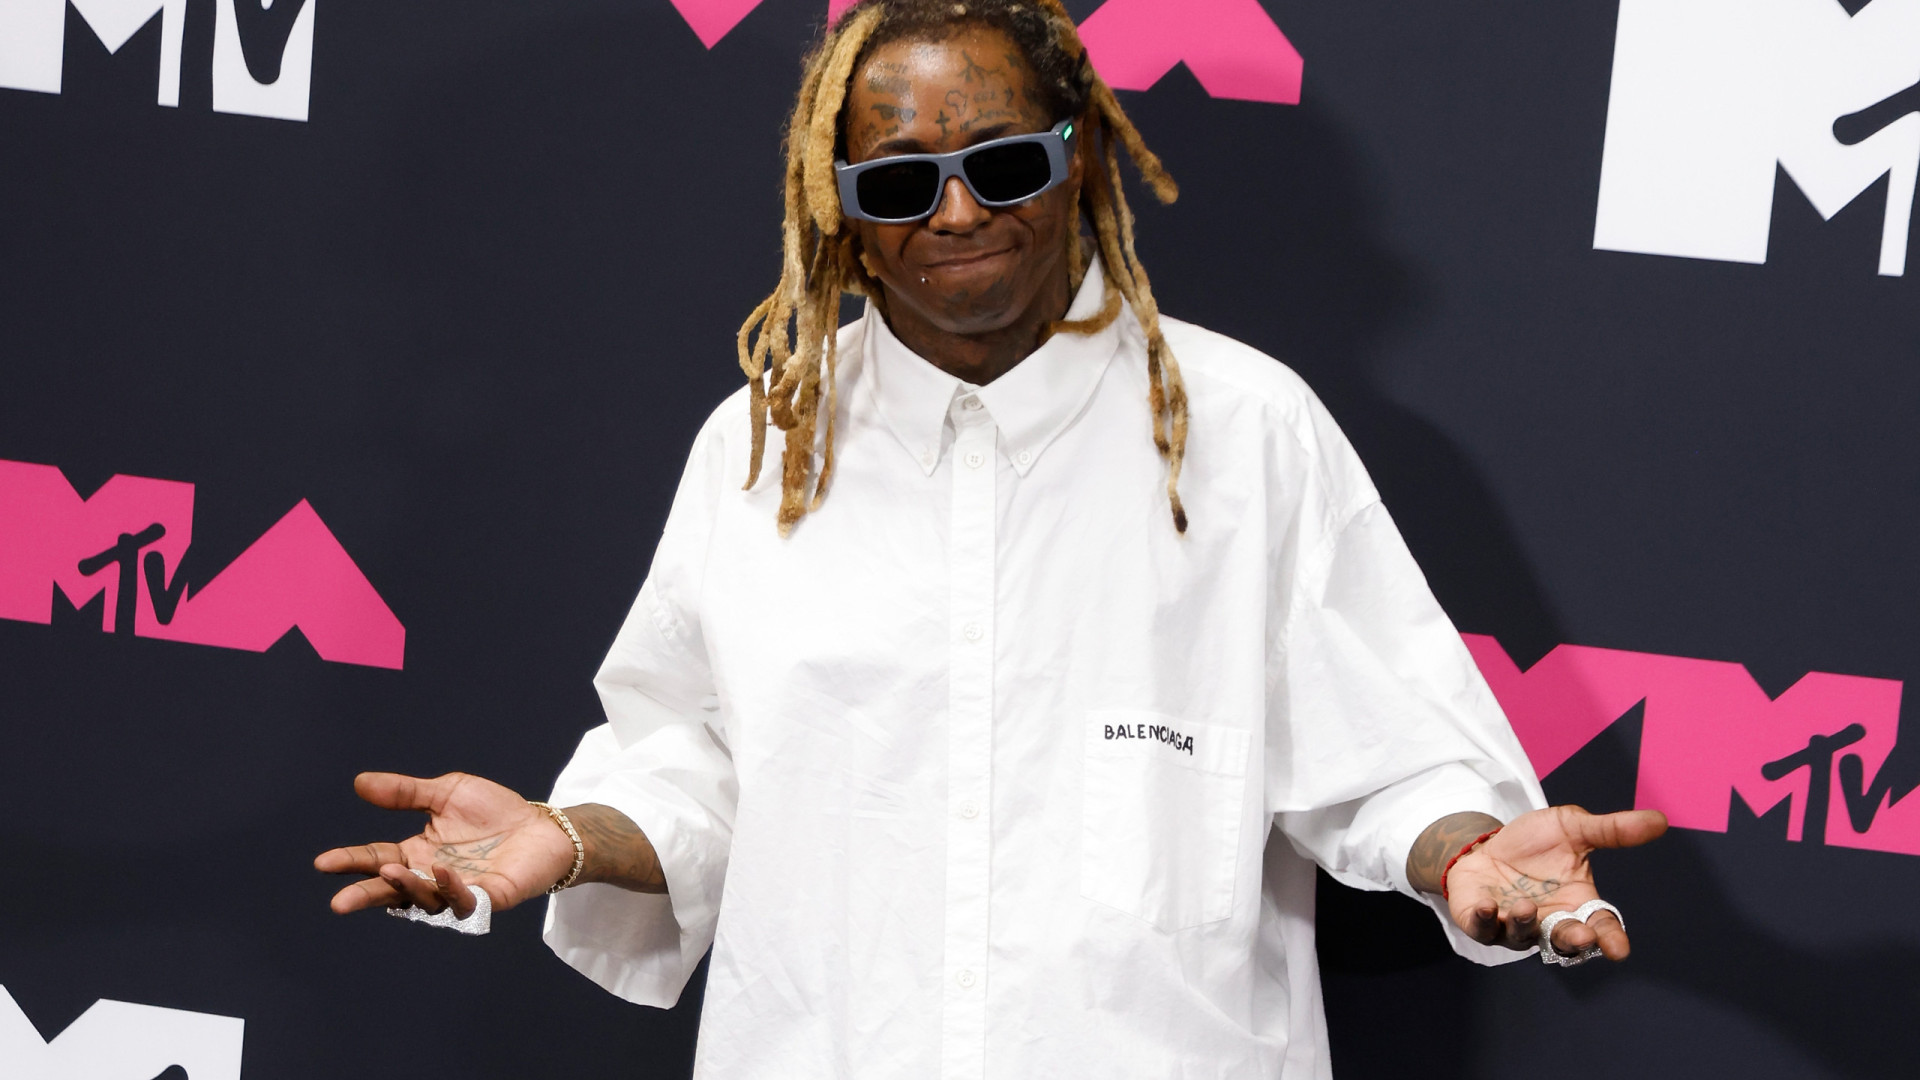 Lil Wayne sobre estátua de cera: " Me perdoem, mas essa mer** não sou eu"